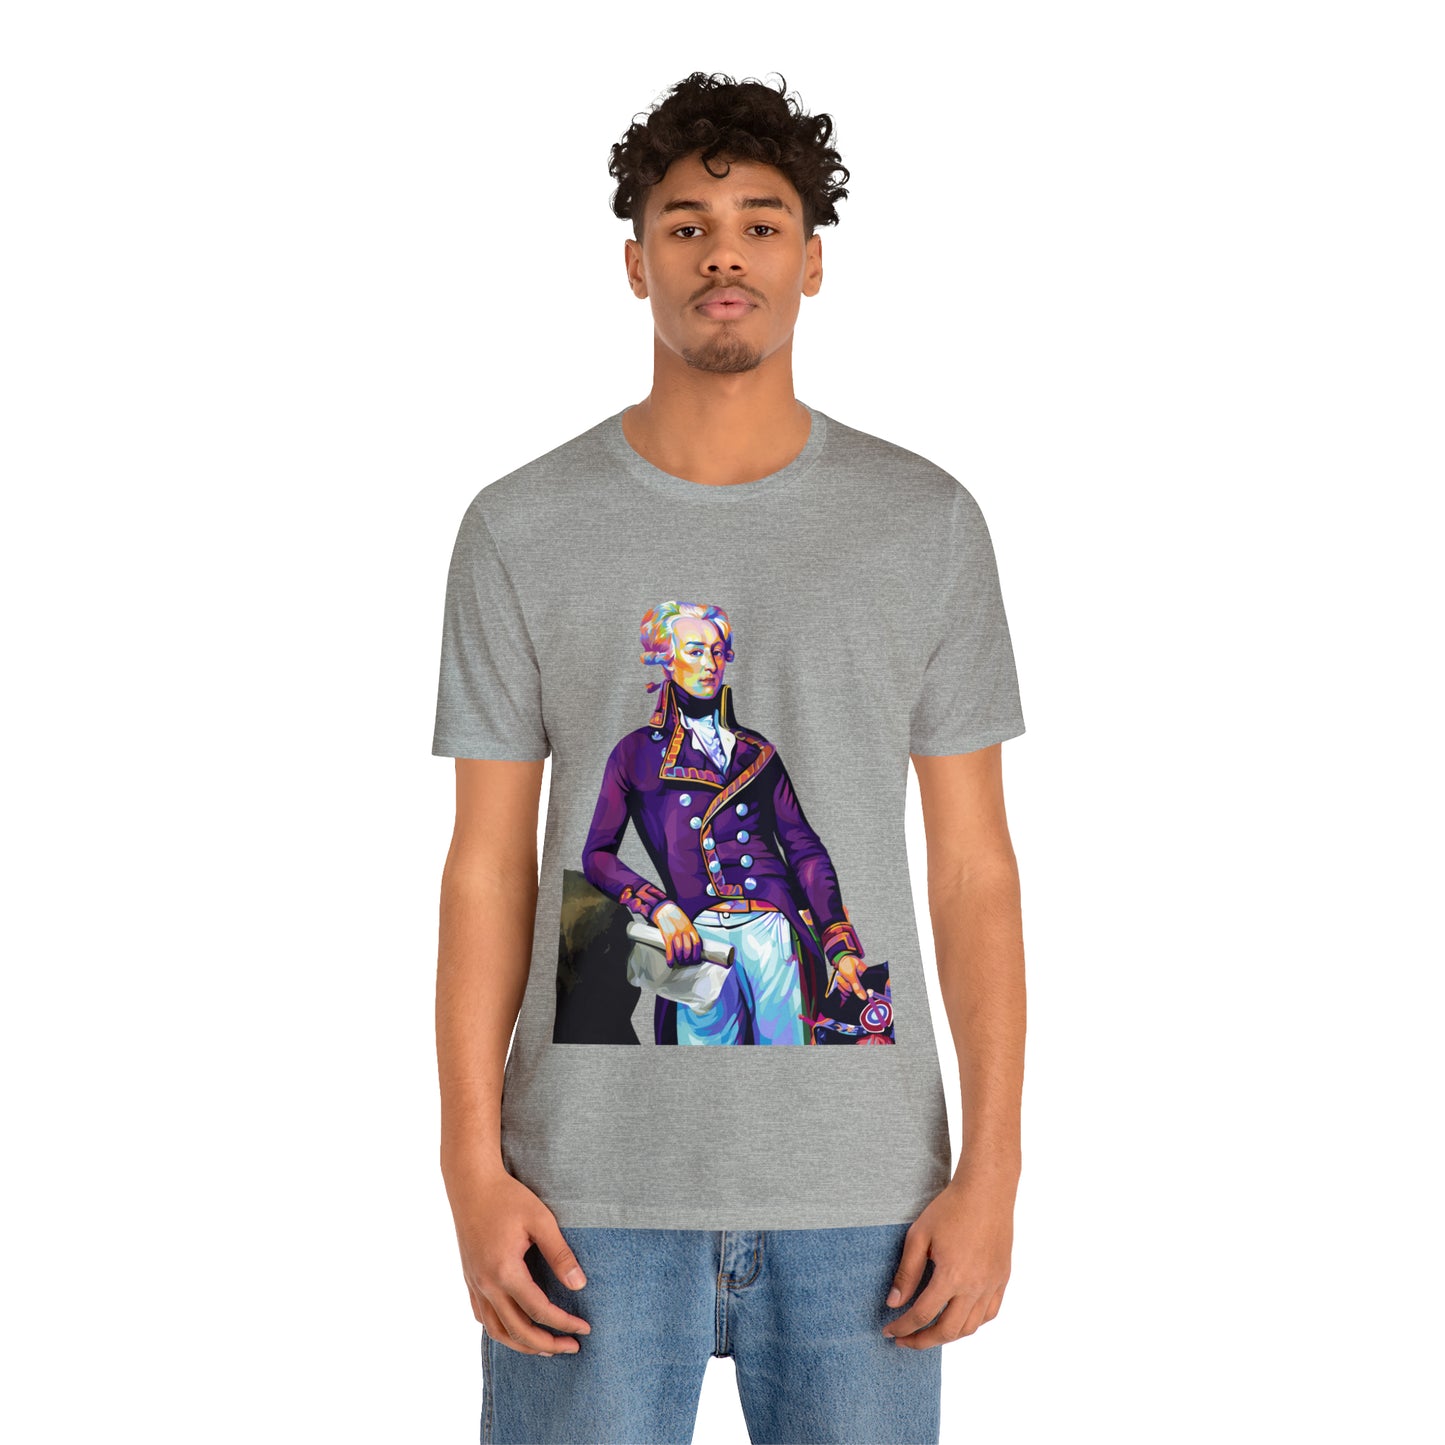 Marquis de Lafayette Pop Art portrait on a tshirt